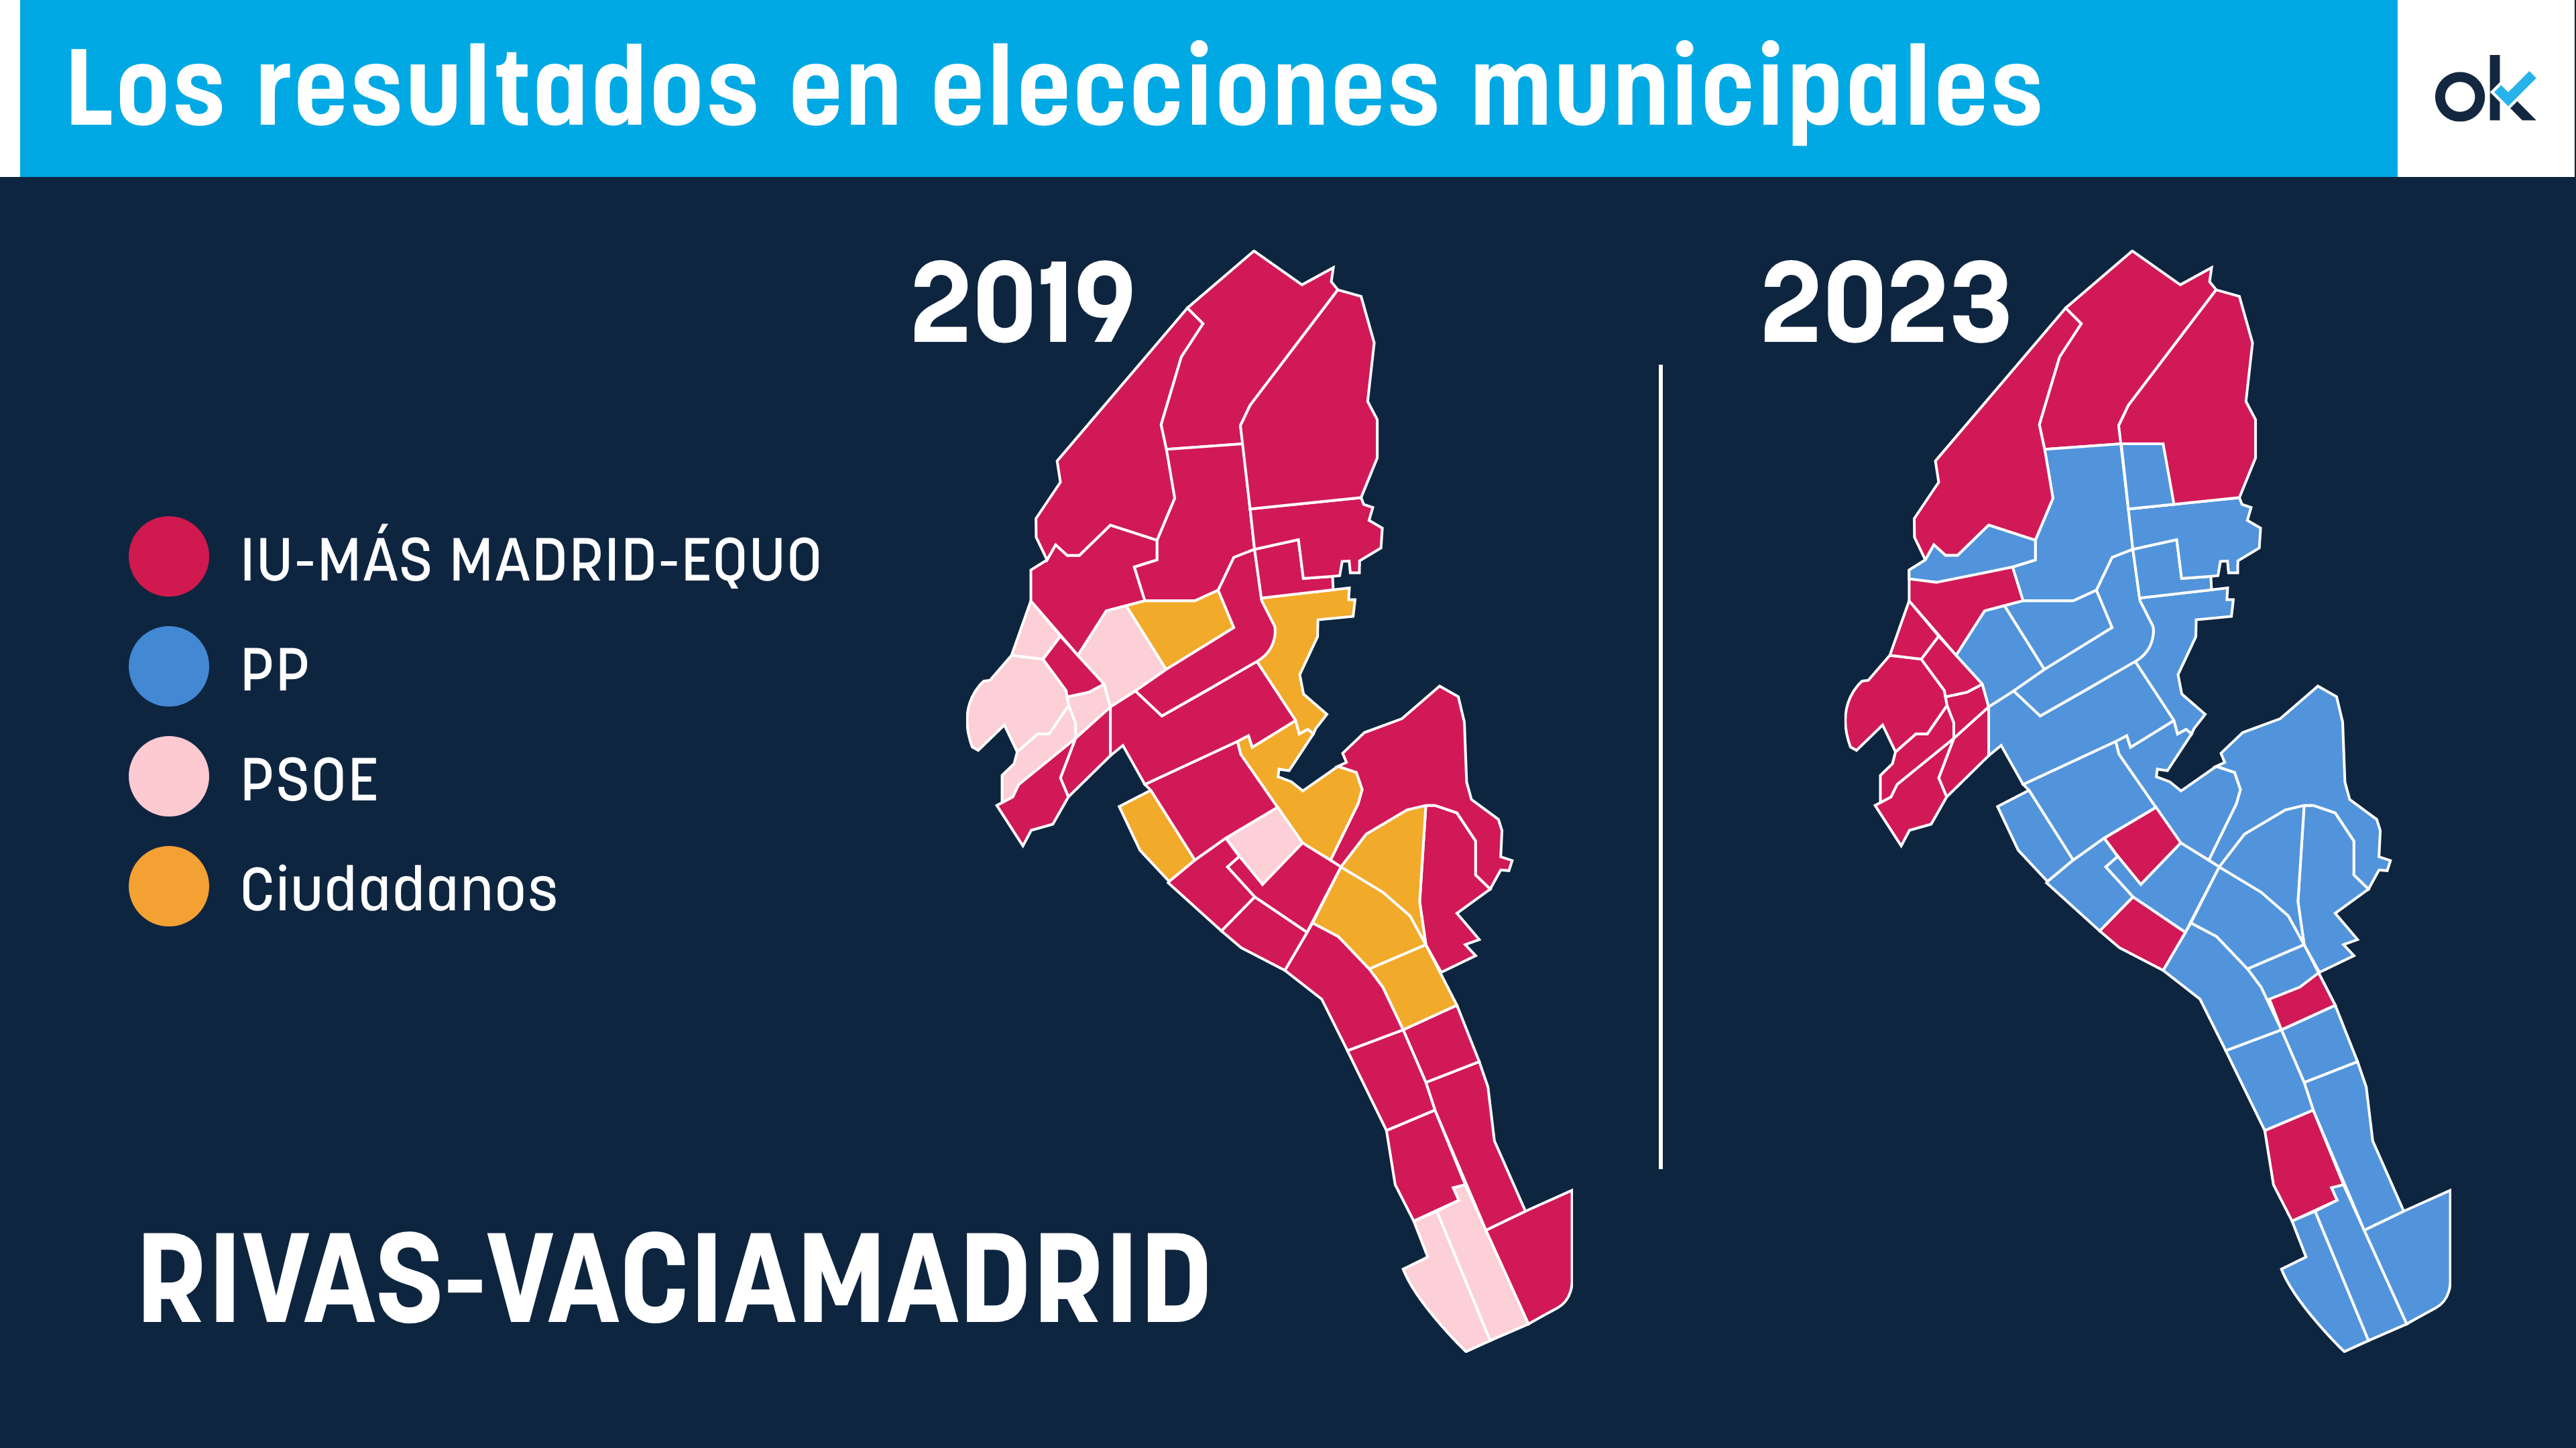 Los resultados en elecciones municipales.